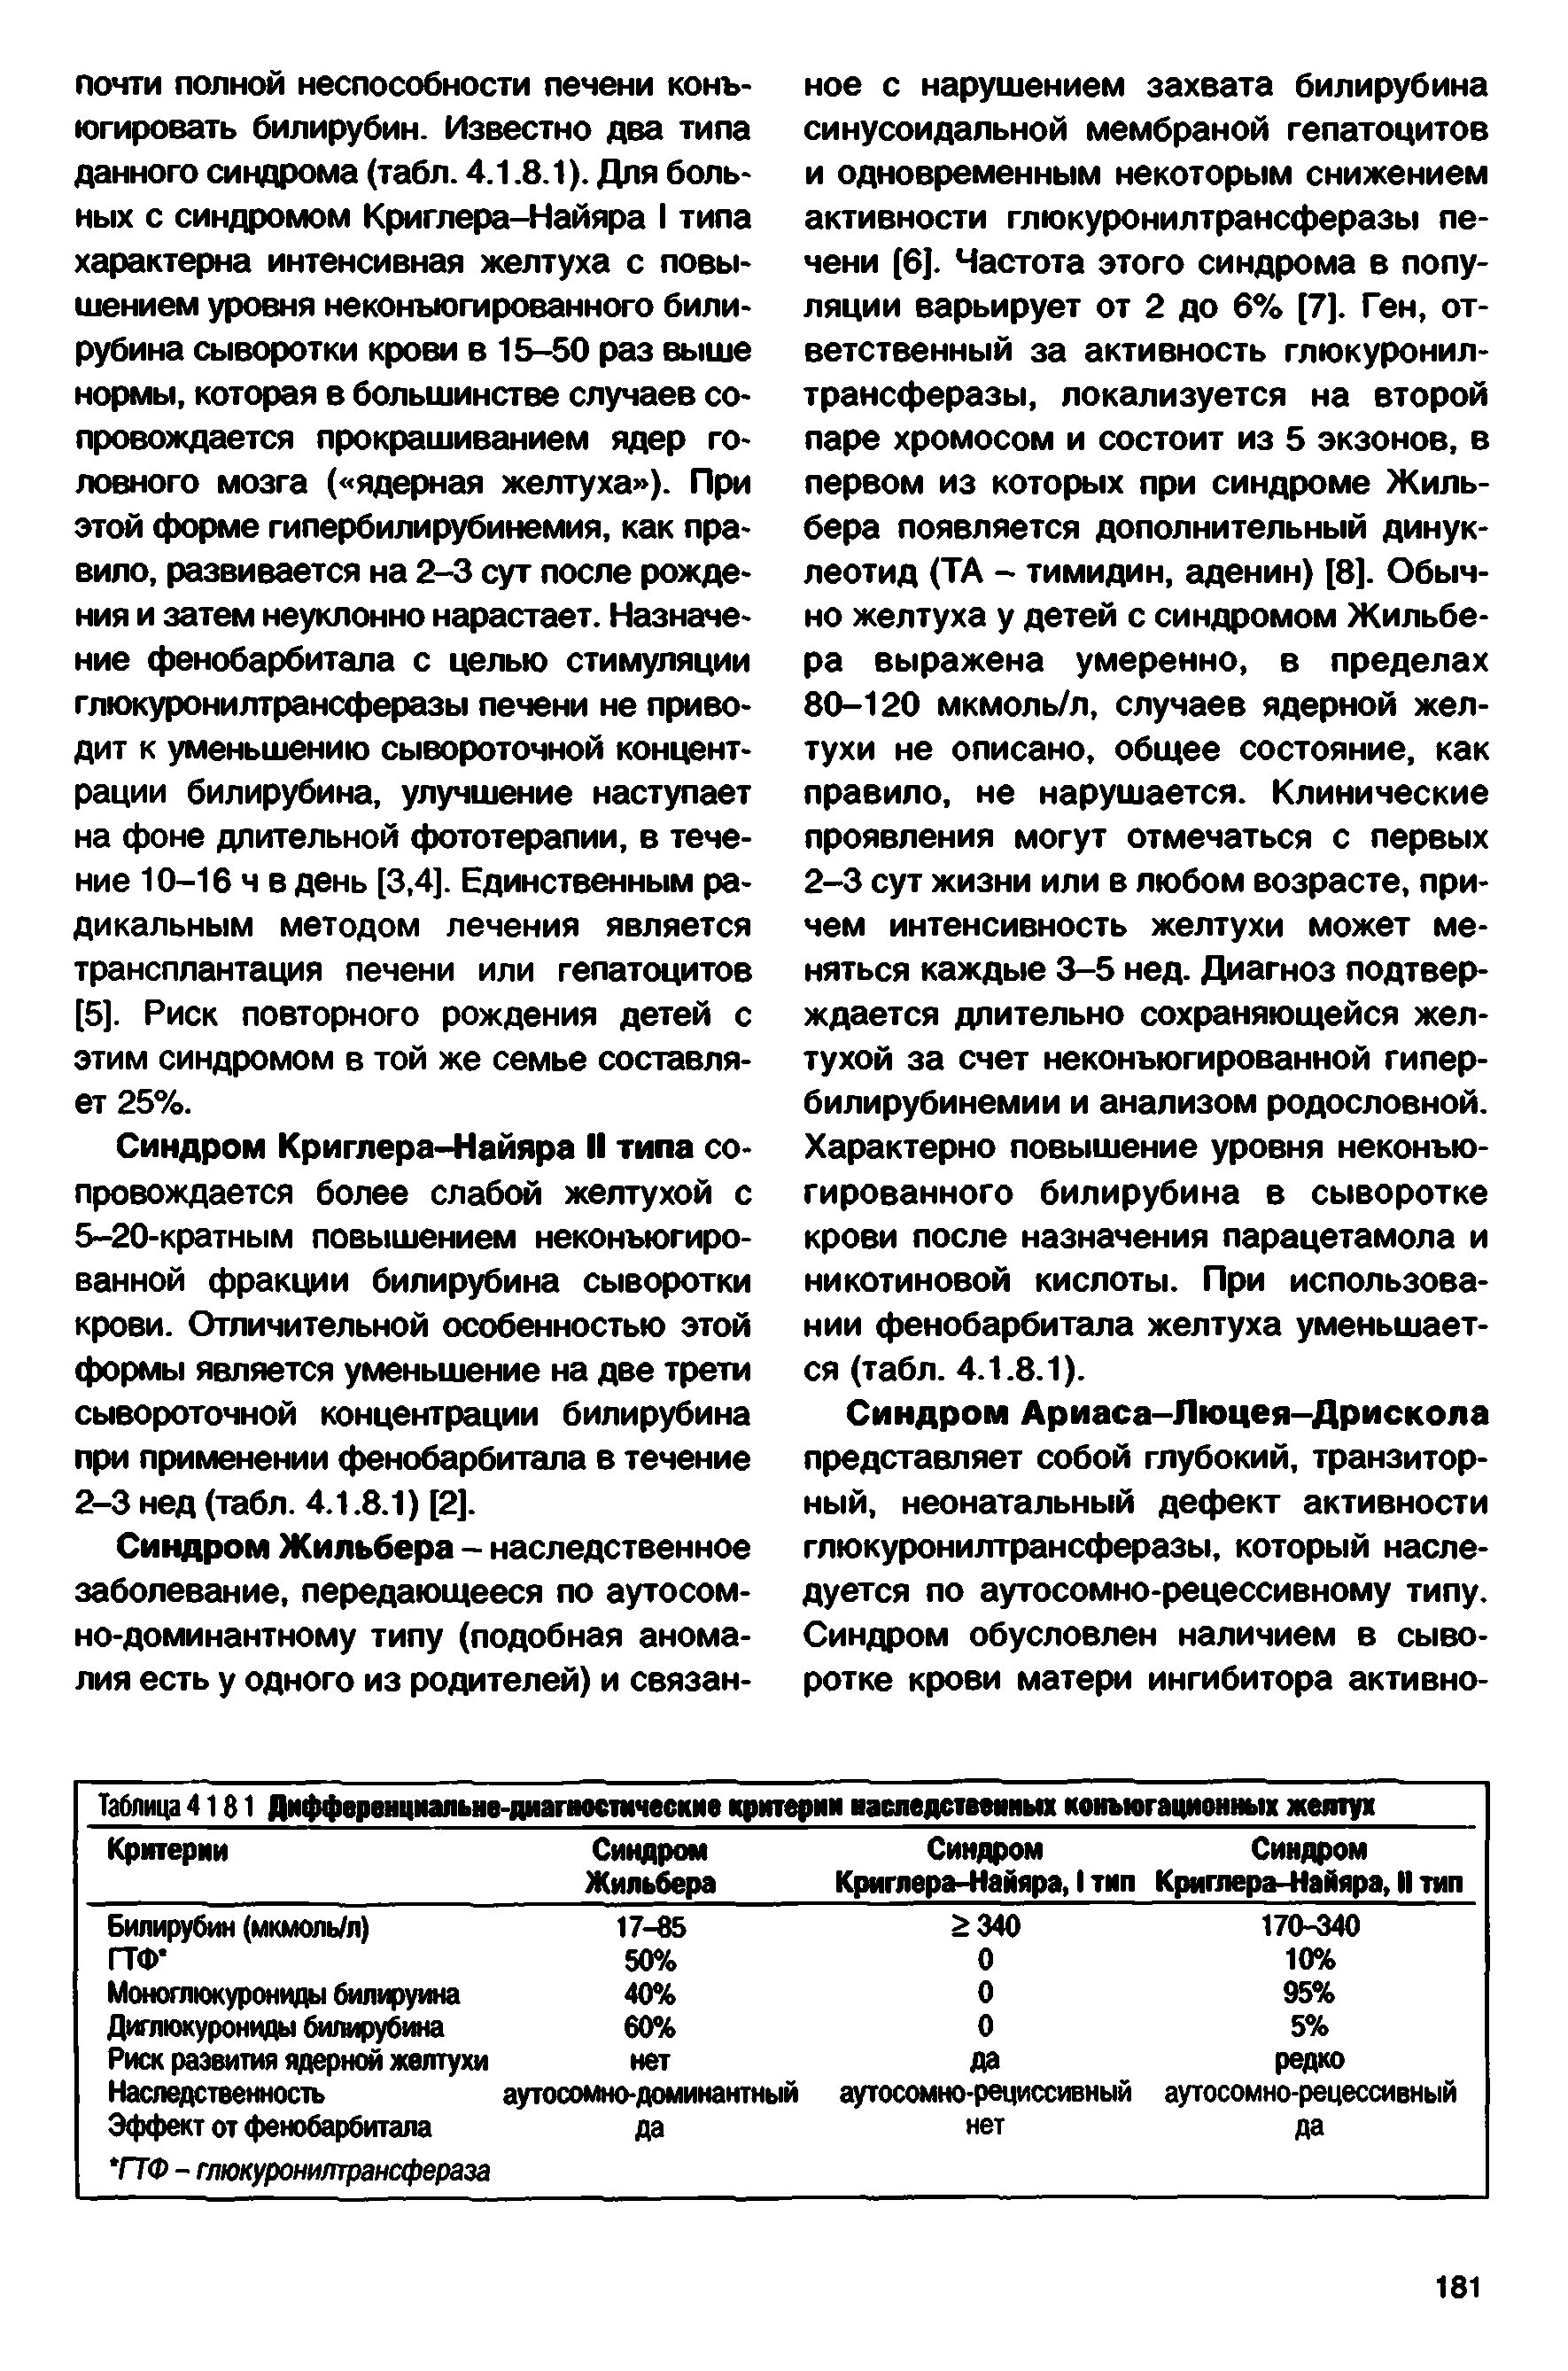 Таблица 4181 Дифференциальне-диапюстмческие критерии наследственных конъюгационных желтух...